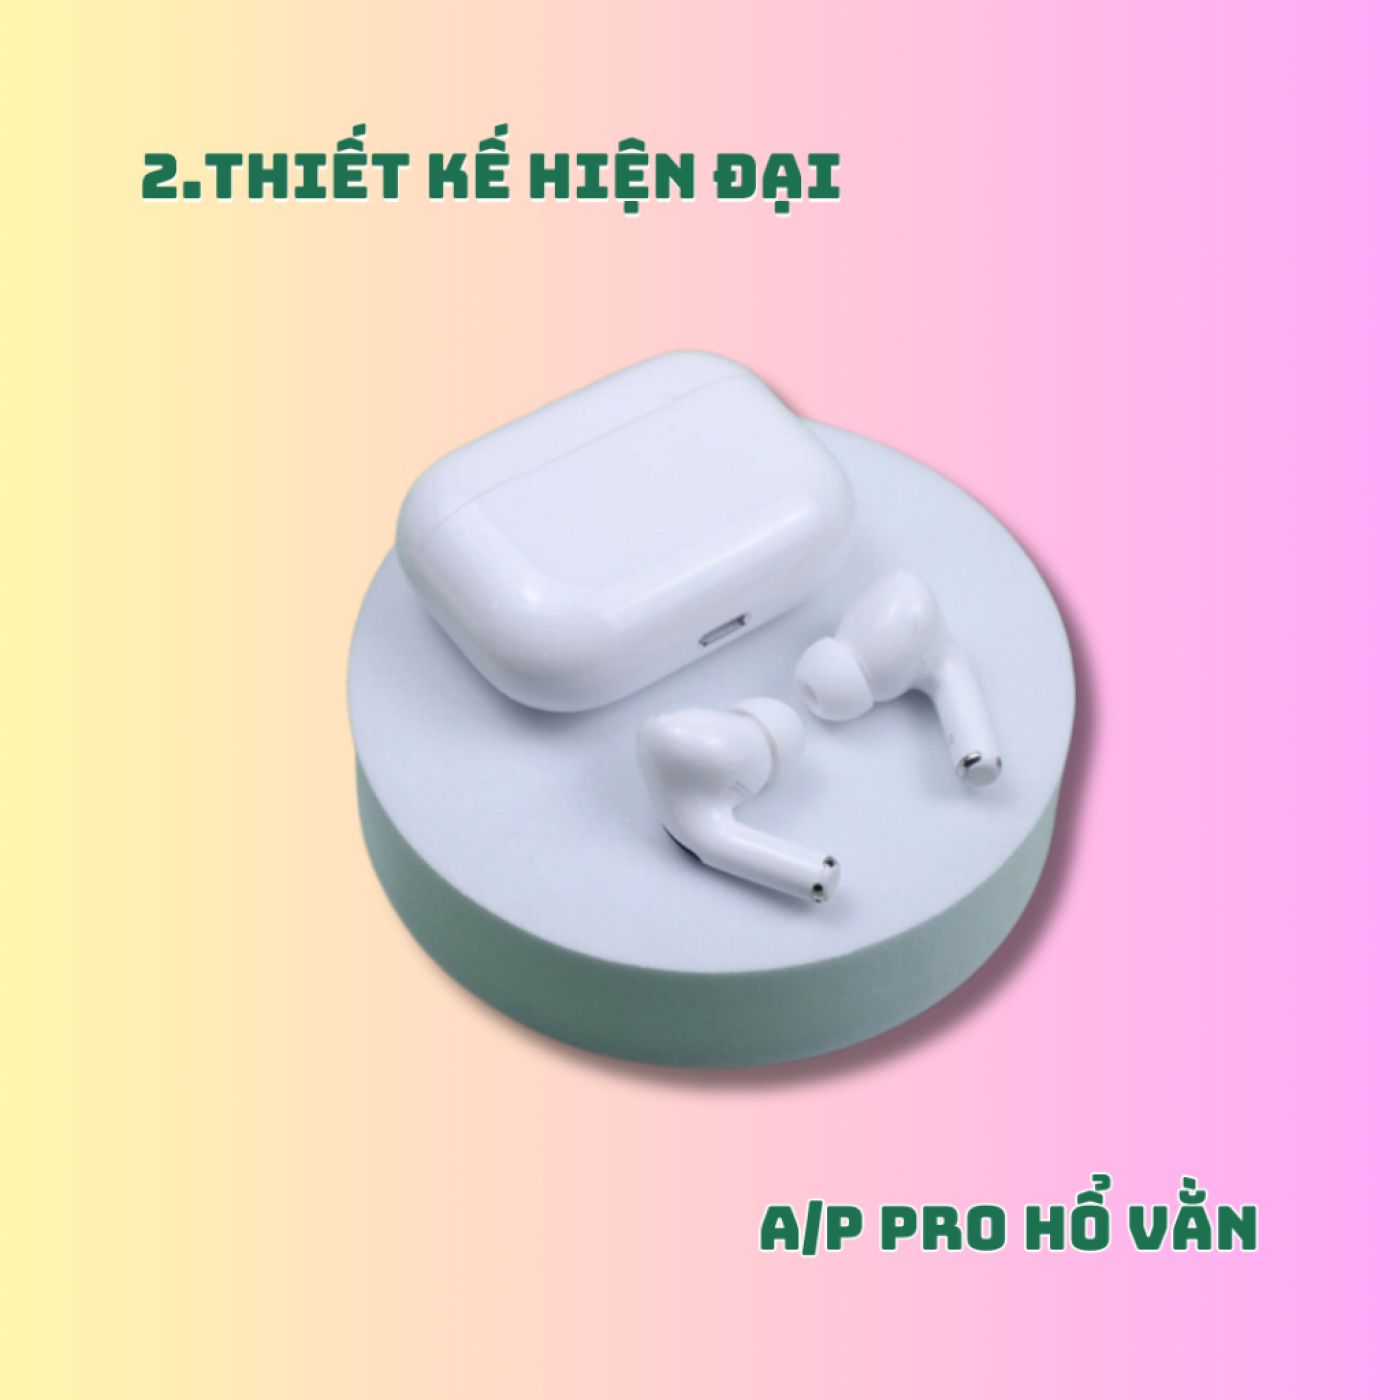 Tai Nghe Bluetooth A/P PRO Hổ Vằn 1562A (Bass căng, Treble cao, Pin trâu) - BH 3 tháng 1 đổi 1